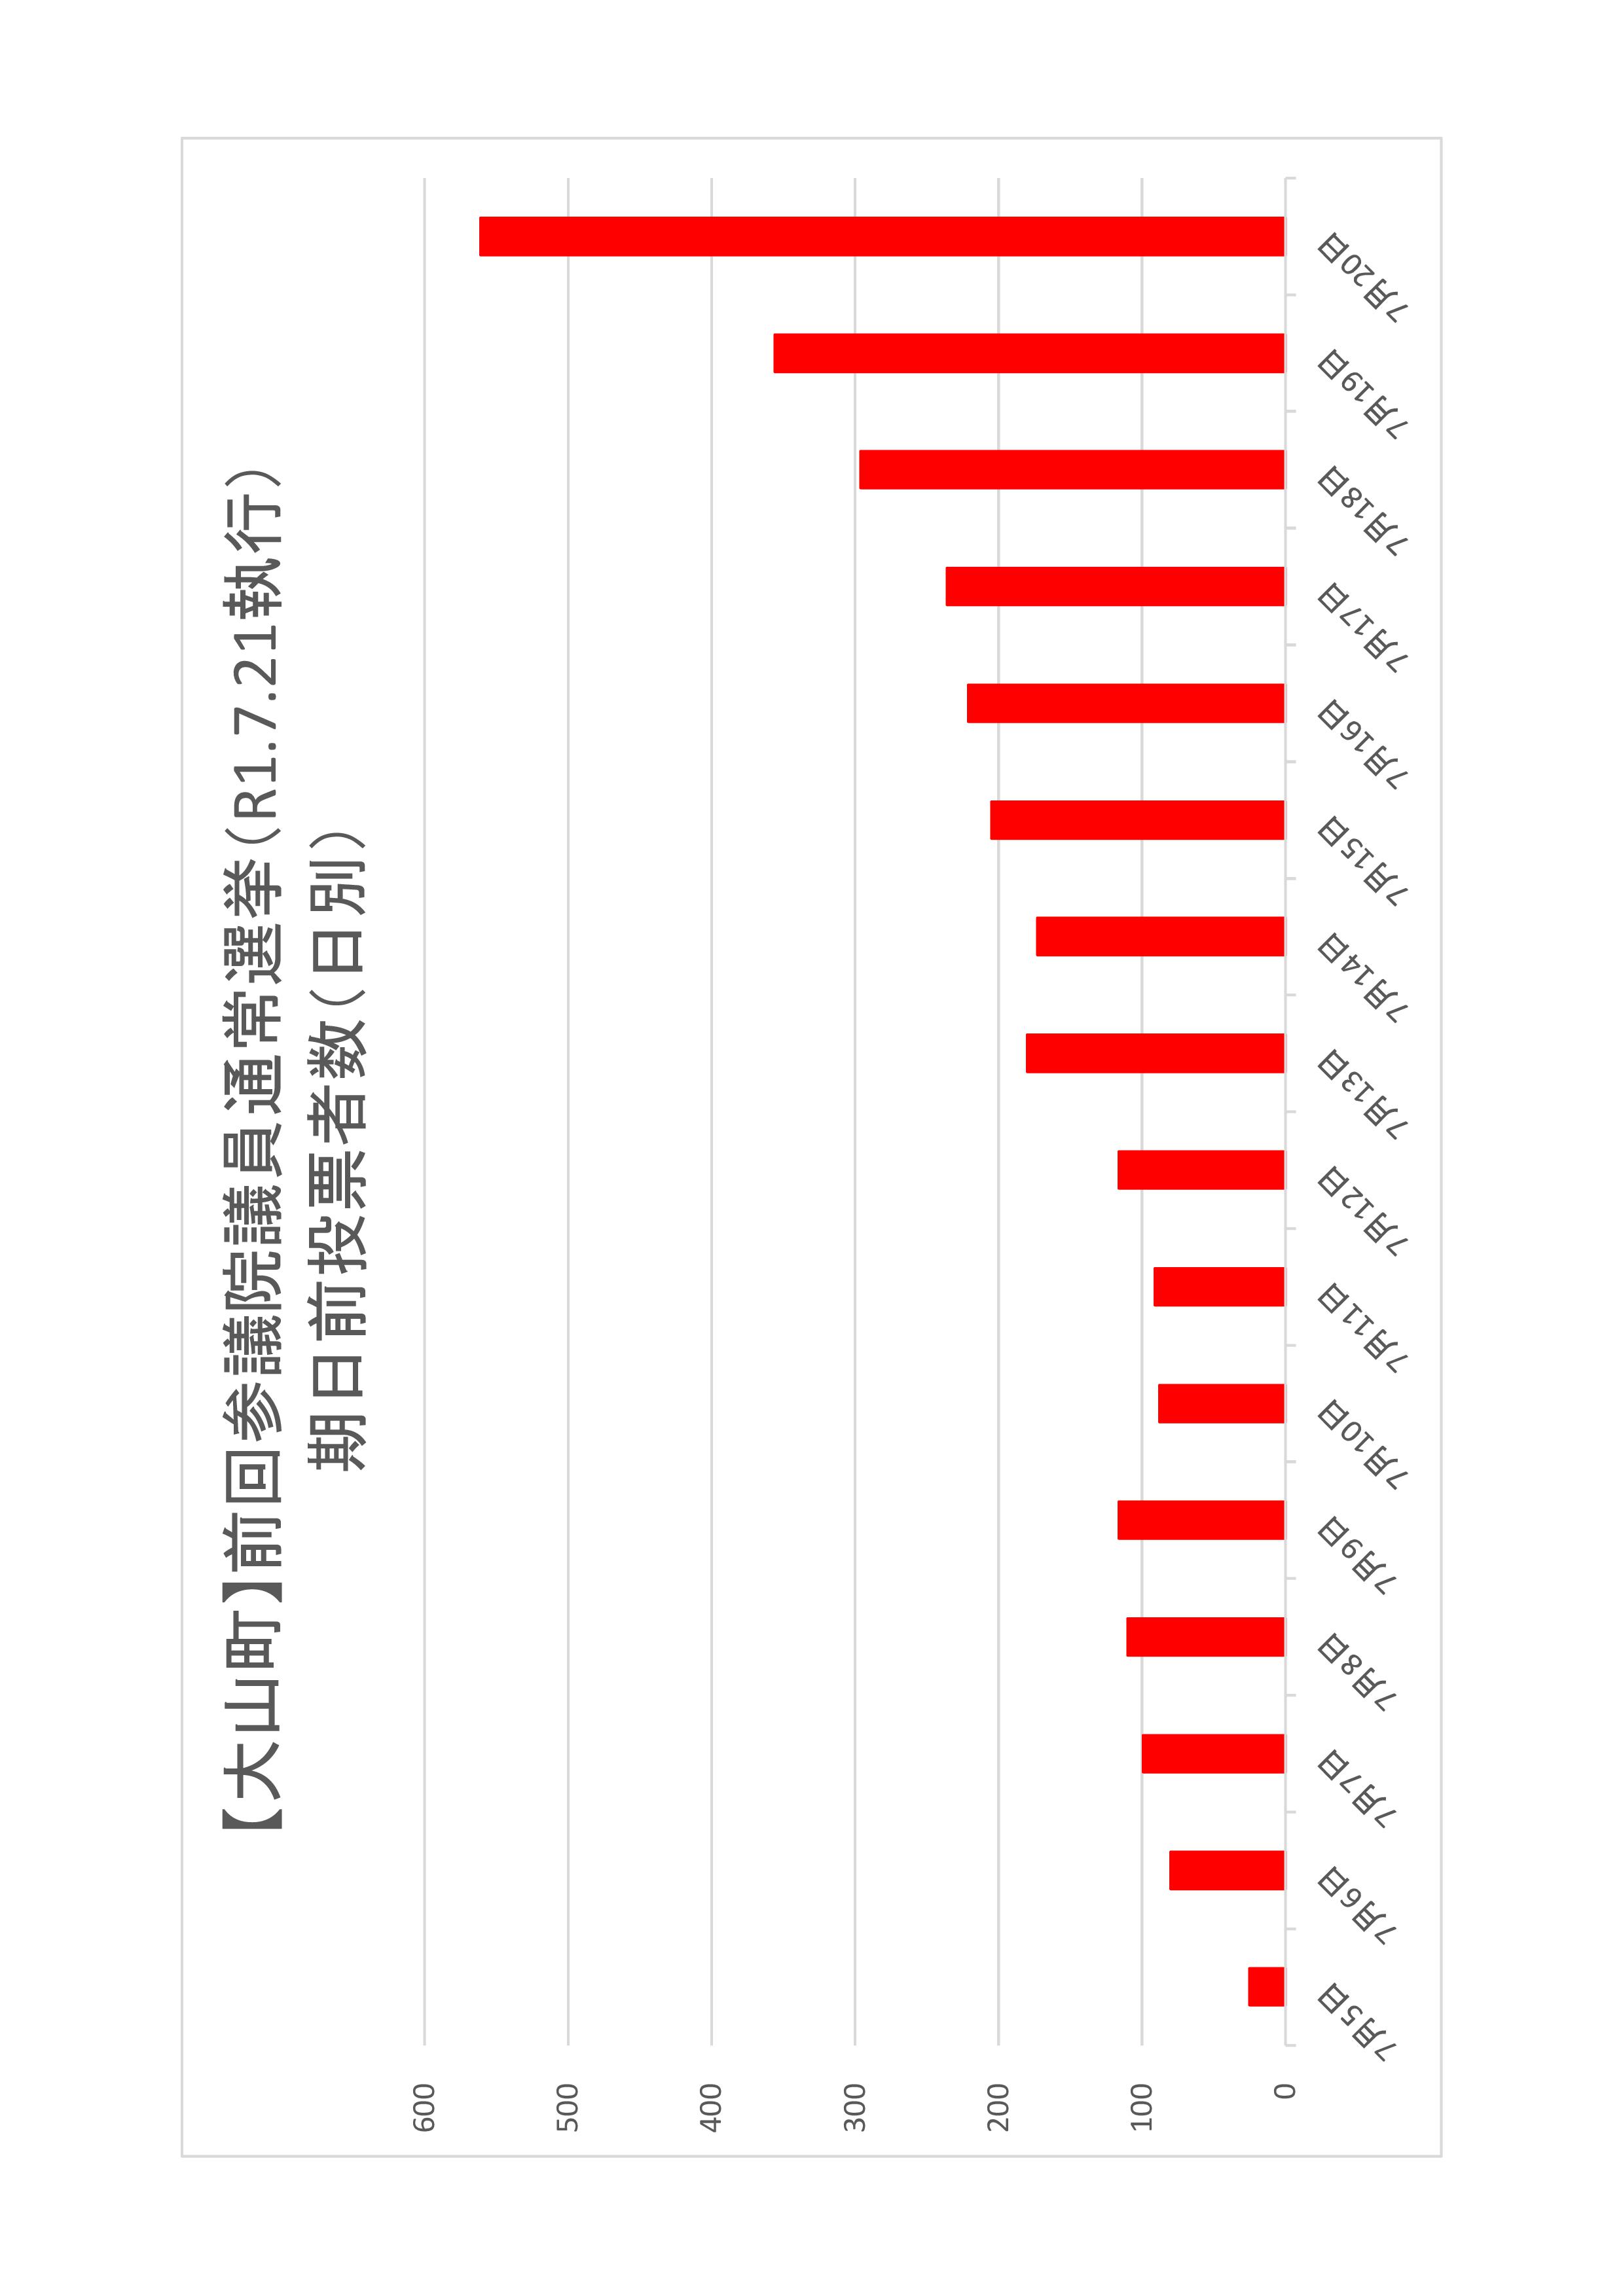 大山町の日別期日前投票者数のグラフ